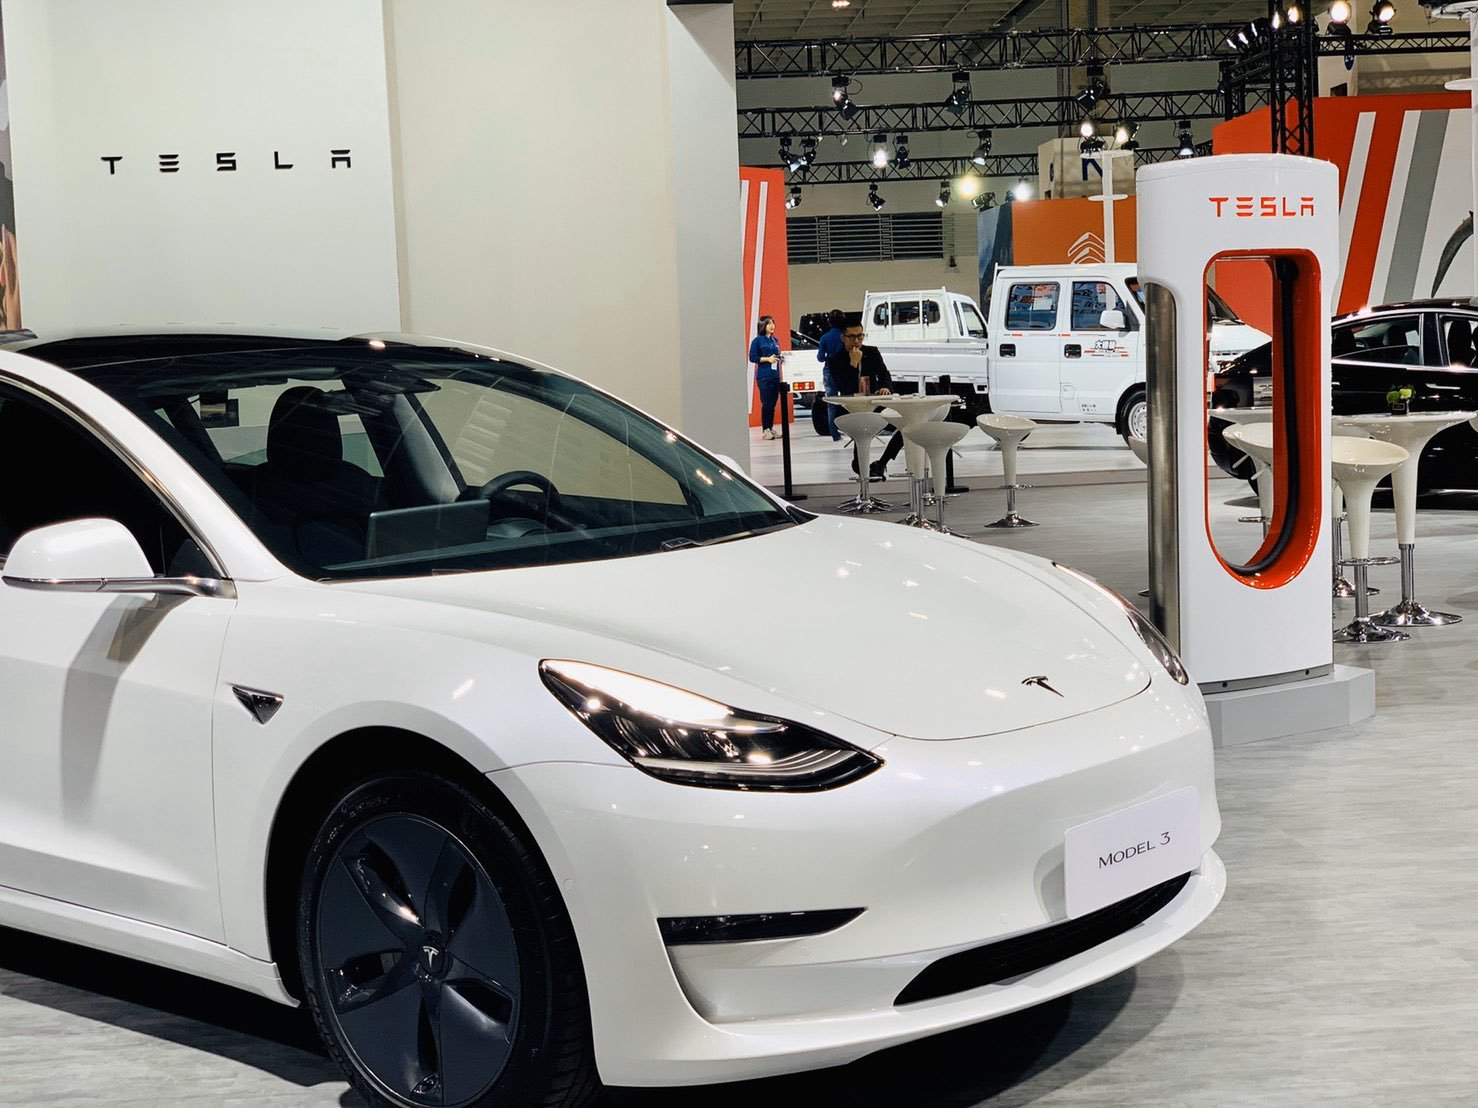 Tesla is gaining momentum in Taiwan